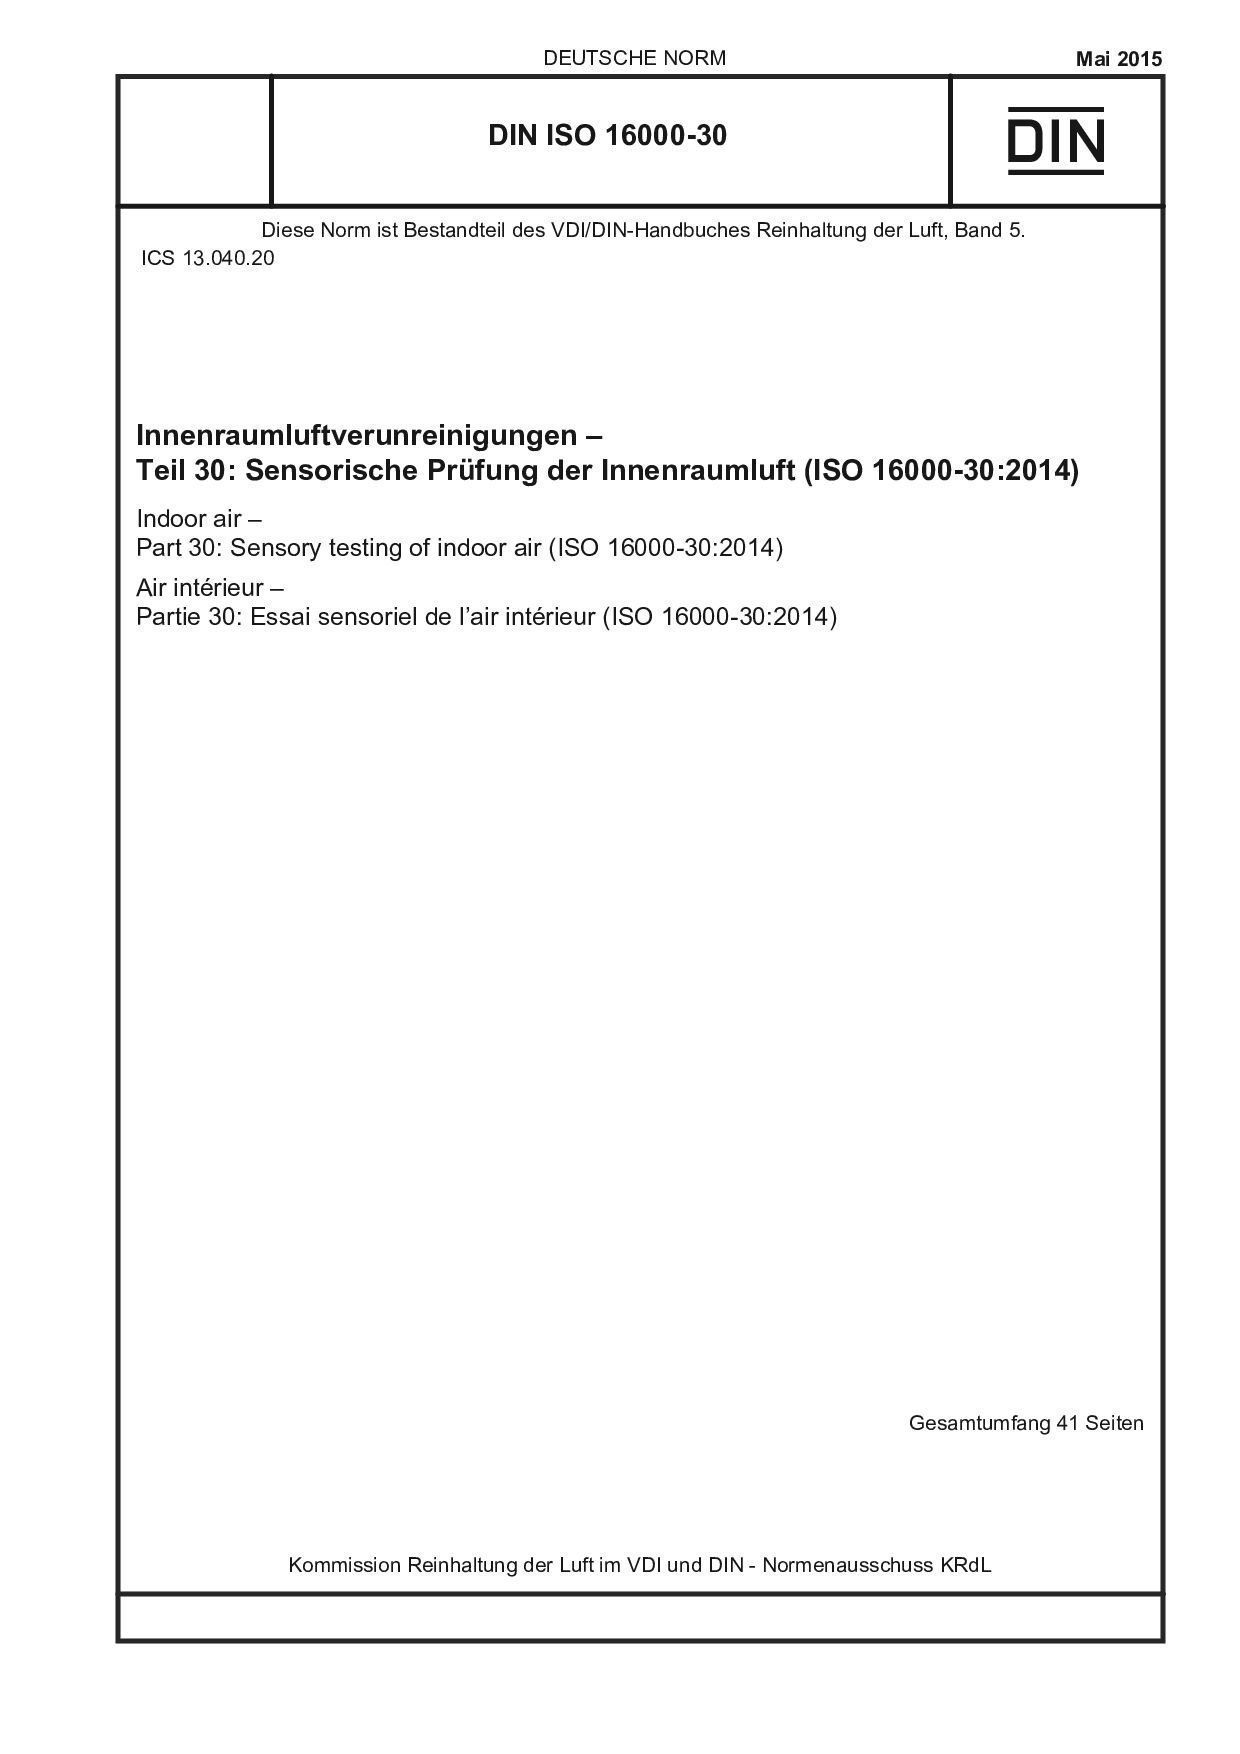 DIN ISO 16000-30:2015封面图